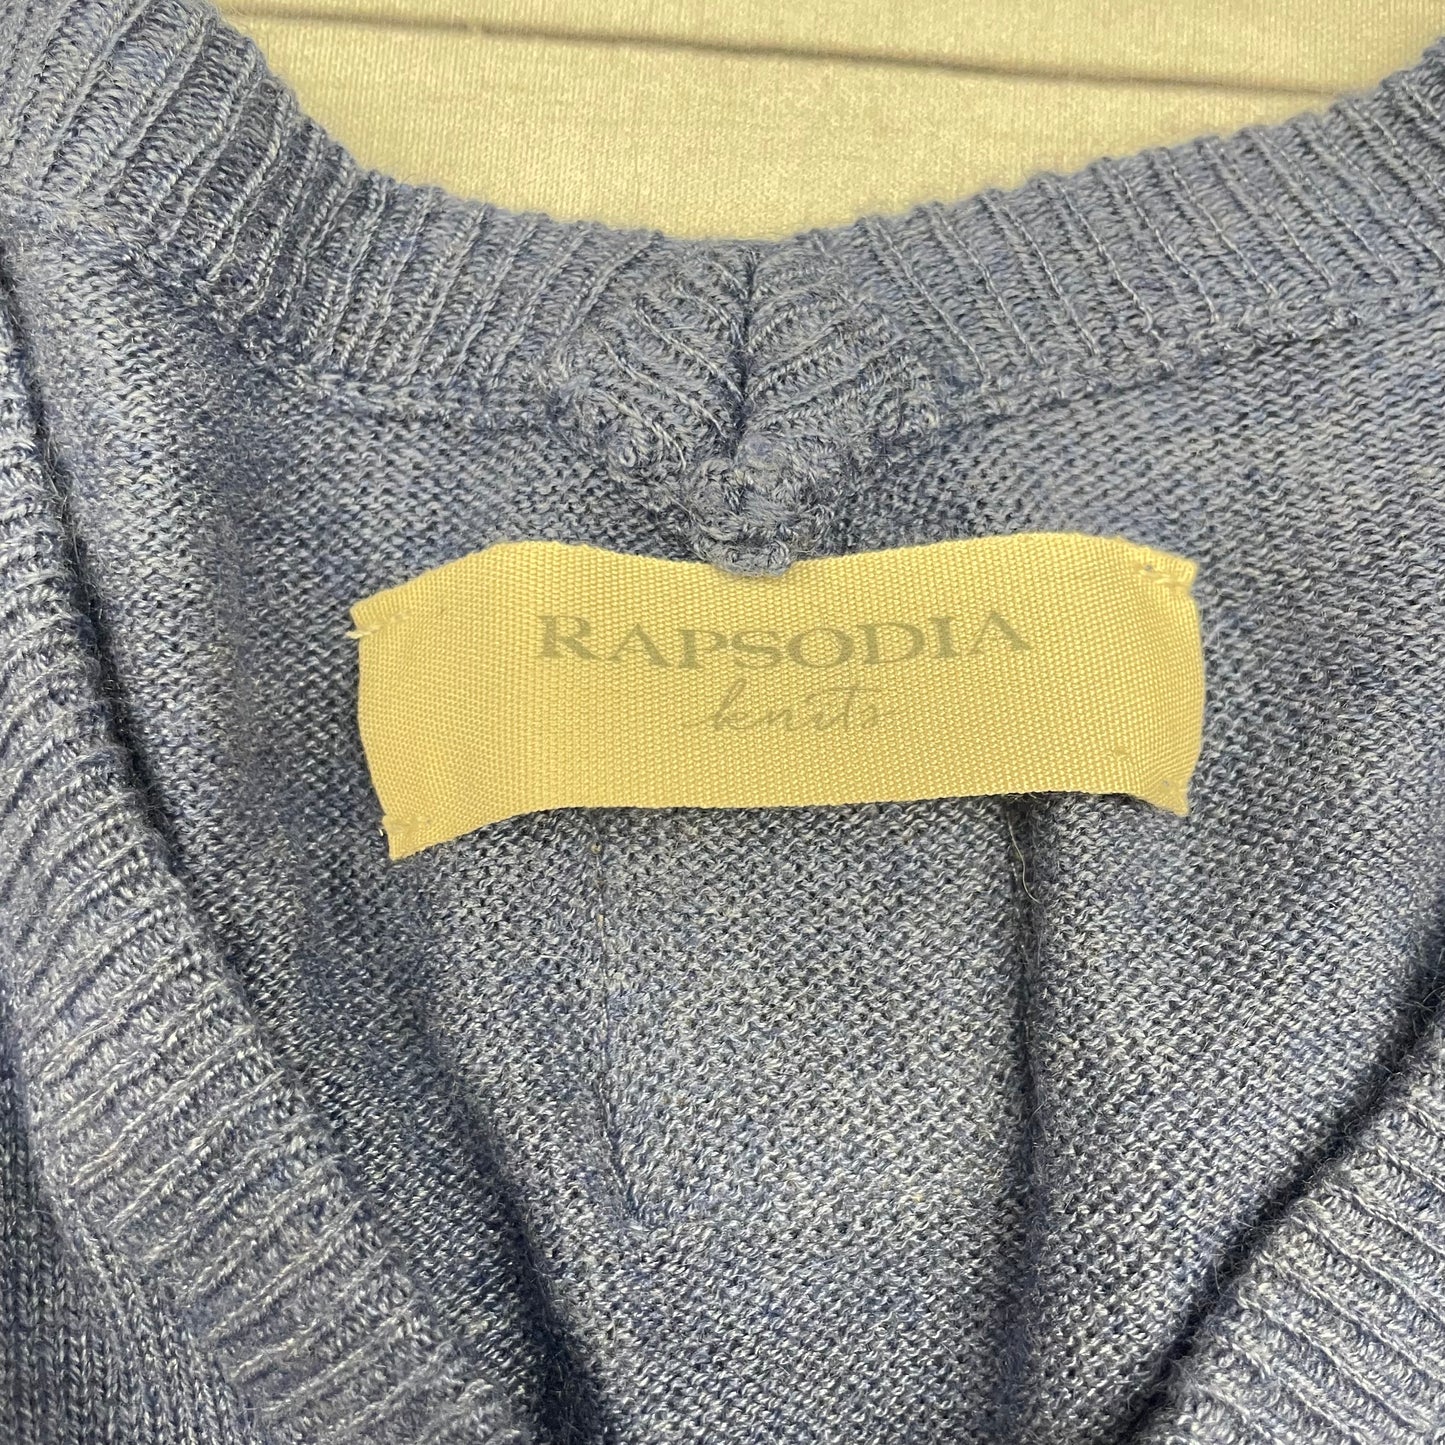 Sweater By Rapsodia  Size: L